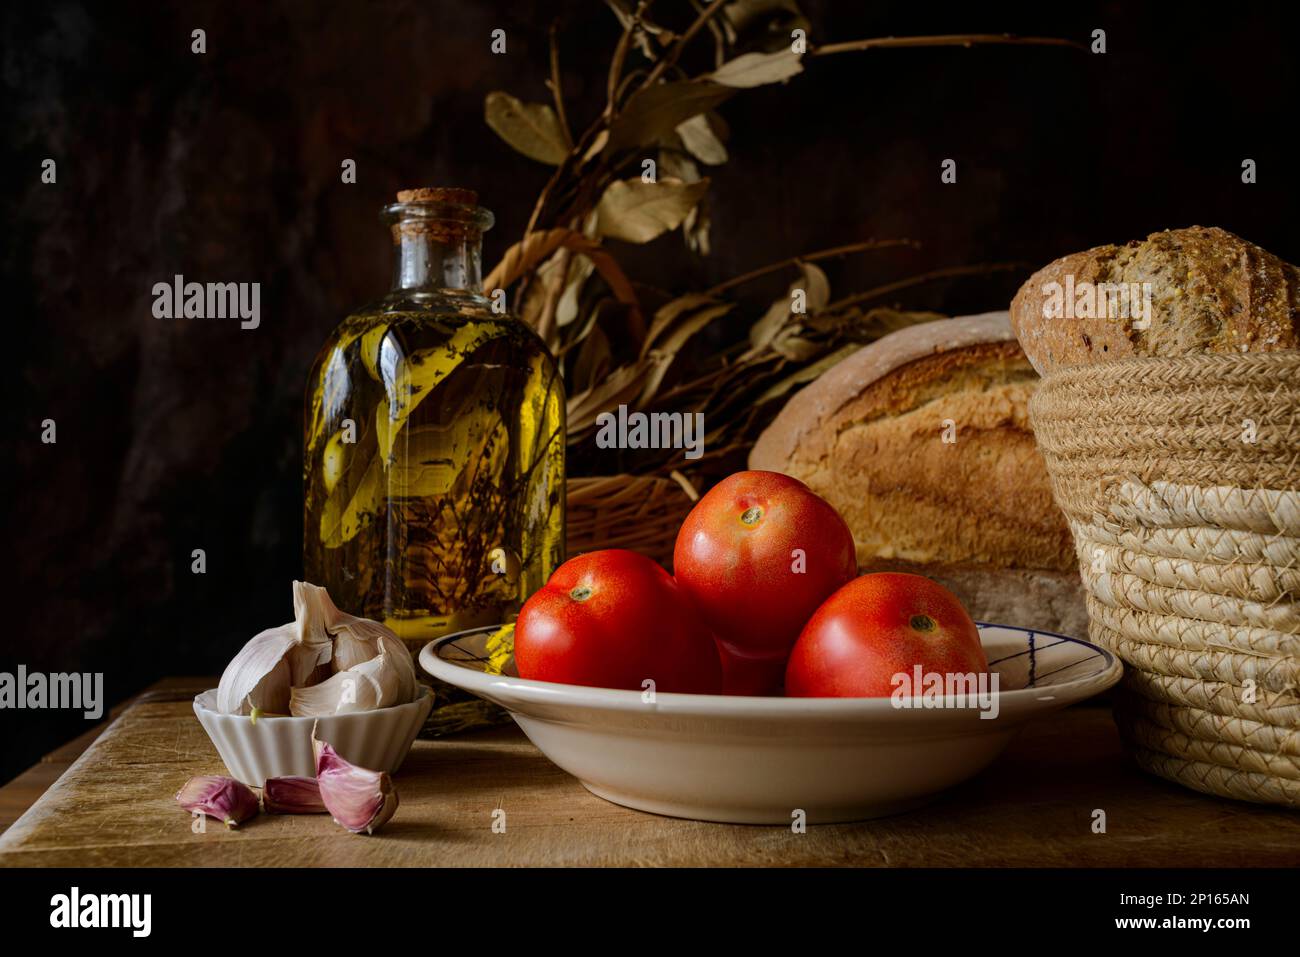 Klassisches Stillleben mit extra nativem Olivenöl, Tomaten, Knoblauch und Brot. Zutaten eines typischen Frühstücks der mediterranen Diät. Stockfoto